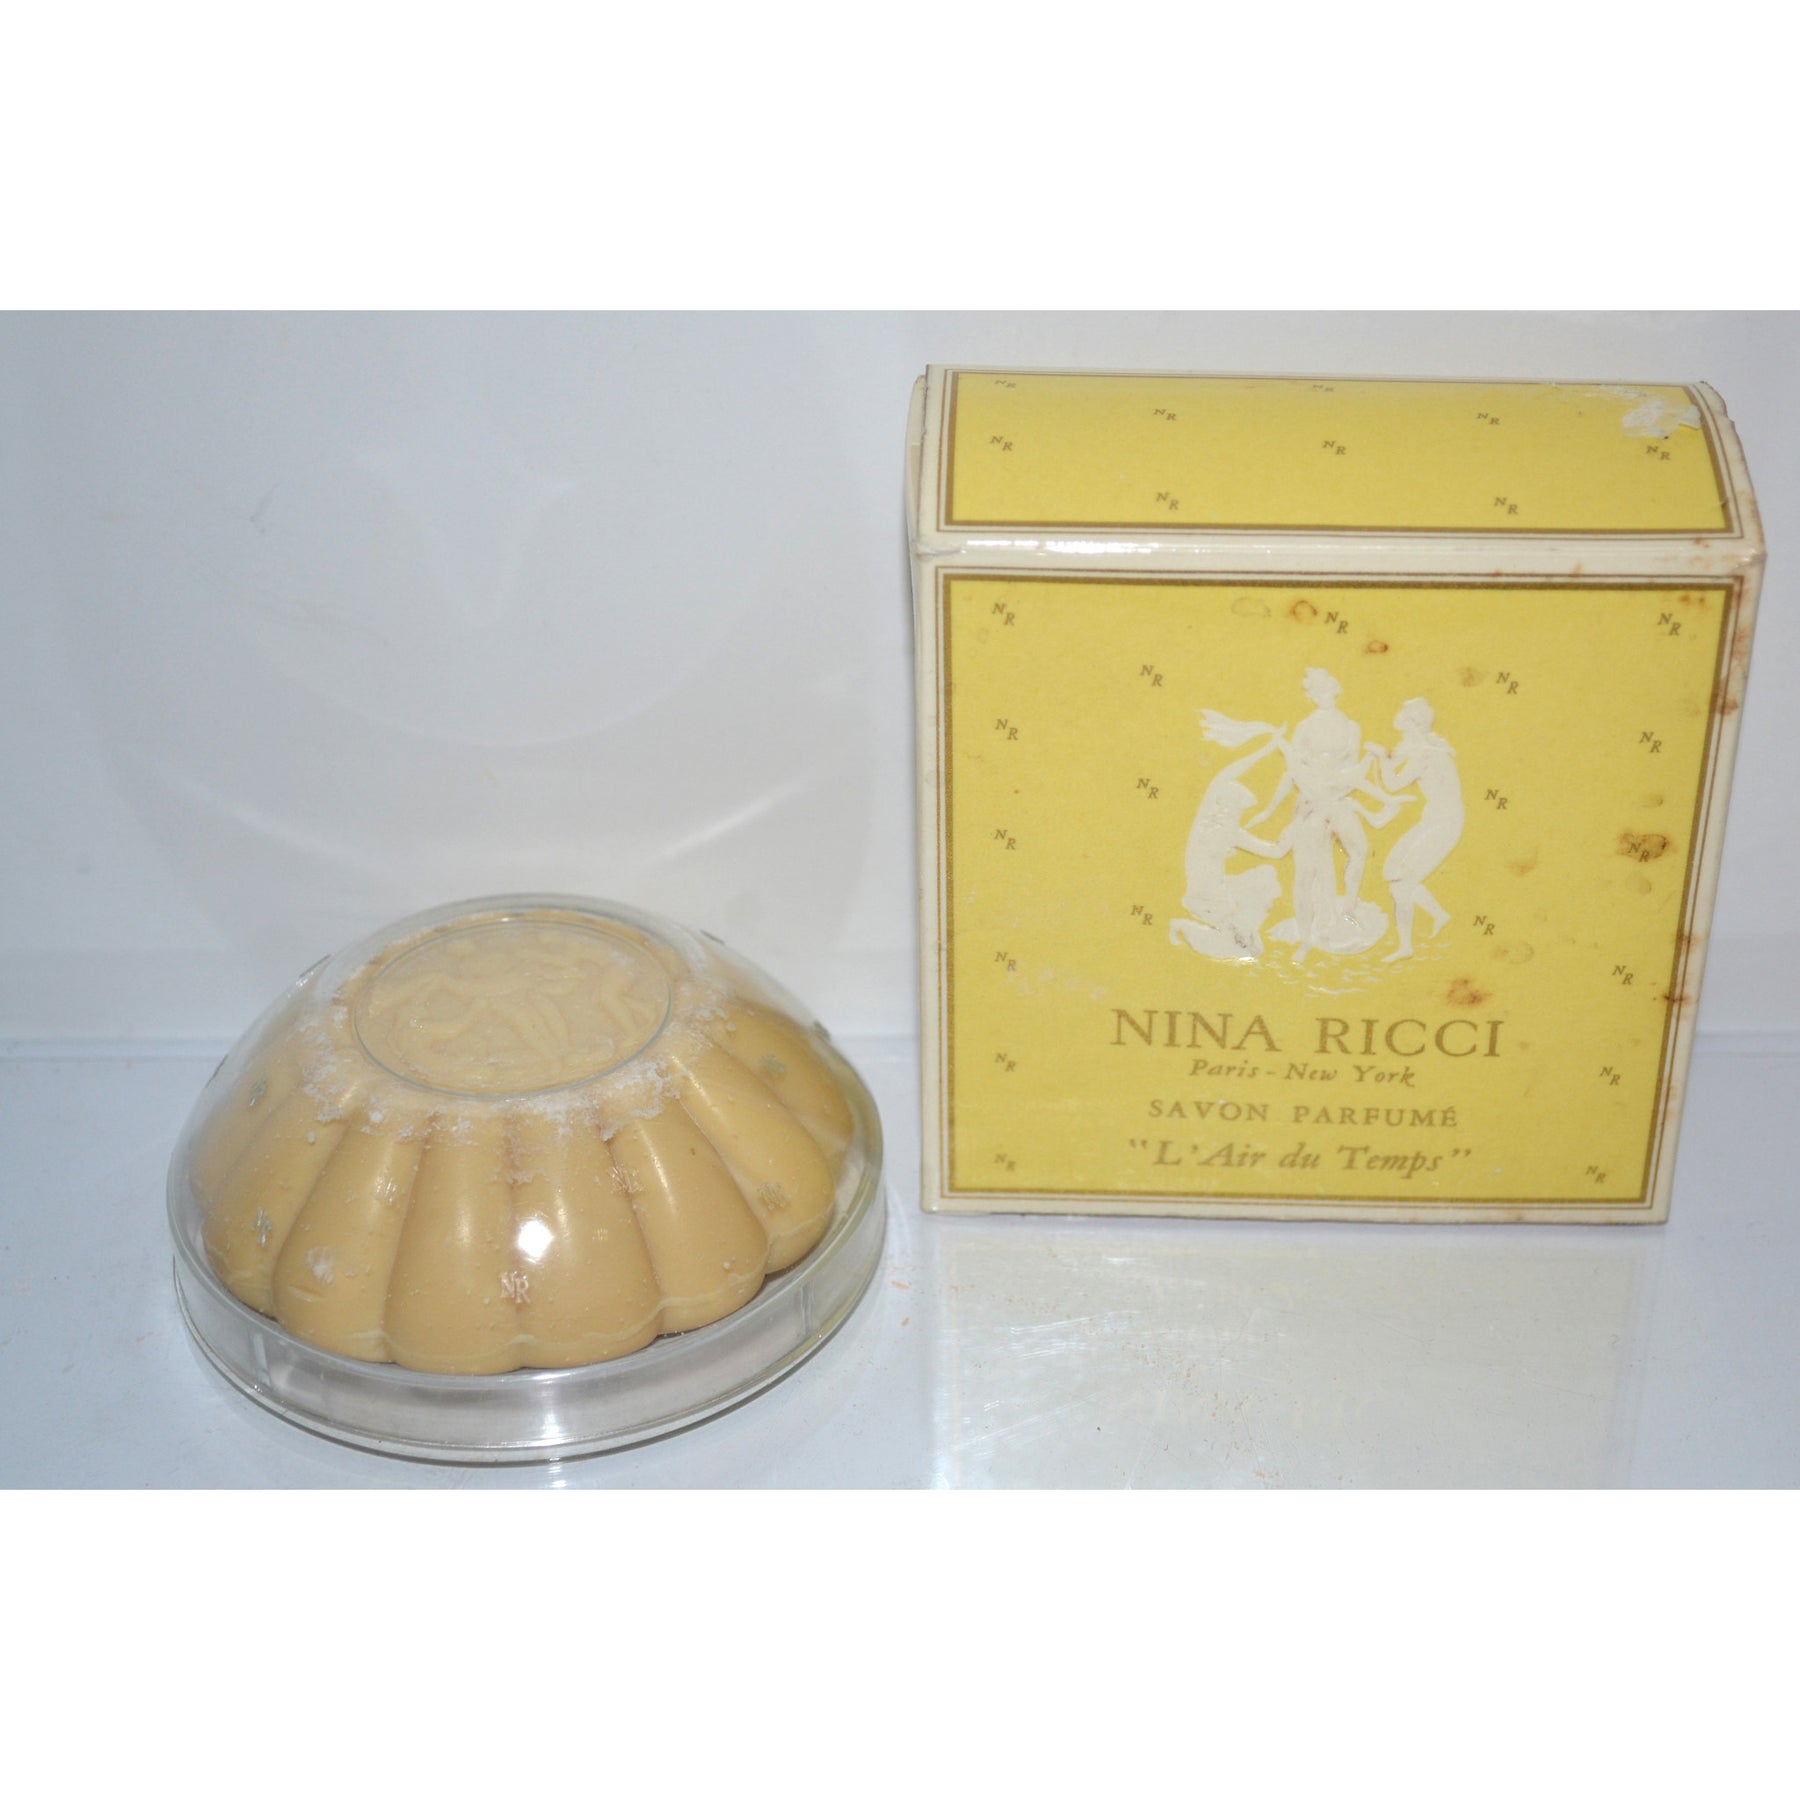 Vintage L'Air du Temps Parfum Soap By Nina Ricci – Quirky Finds